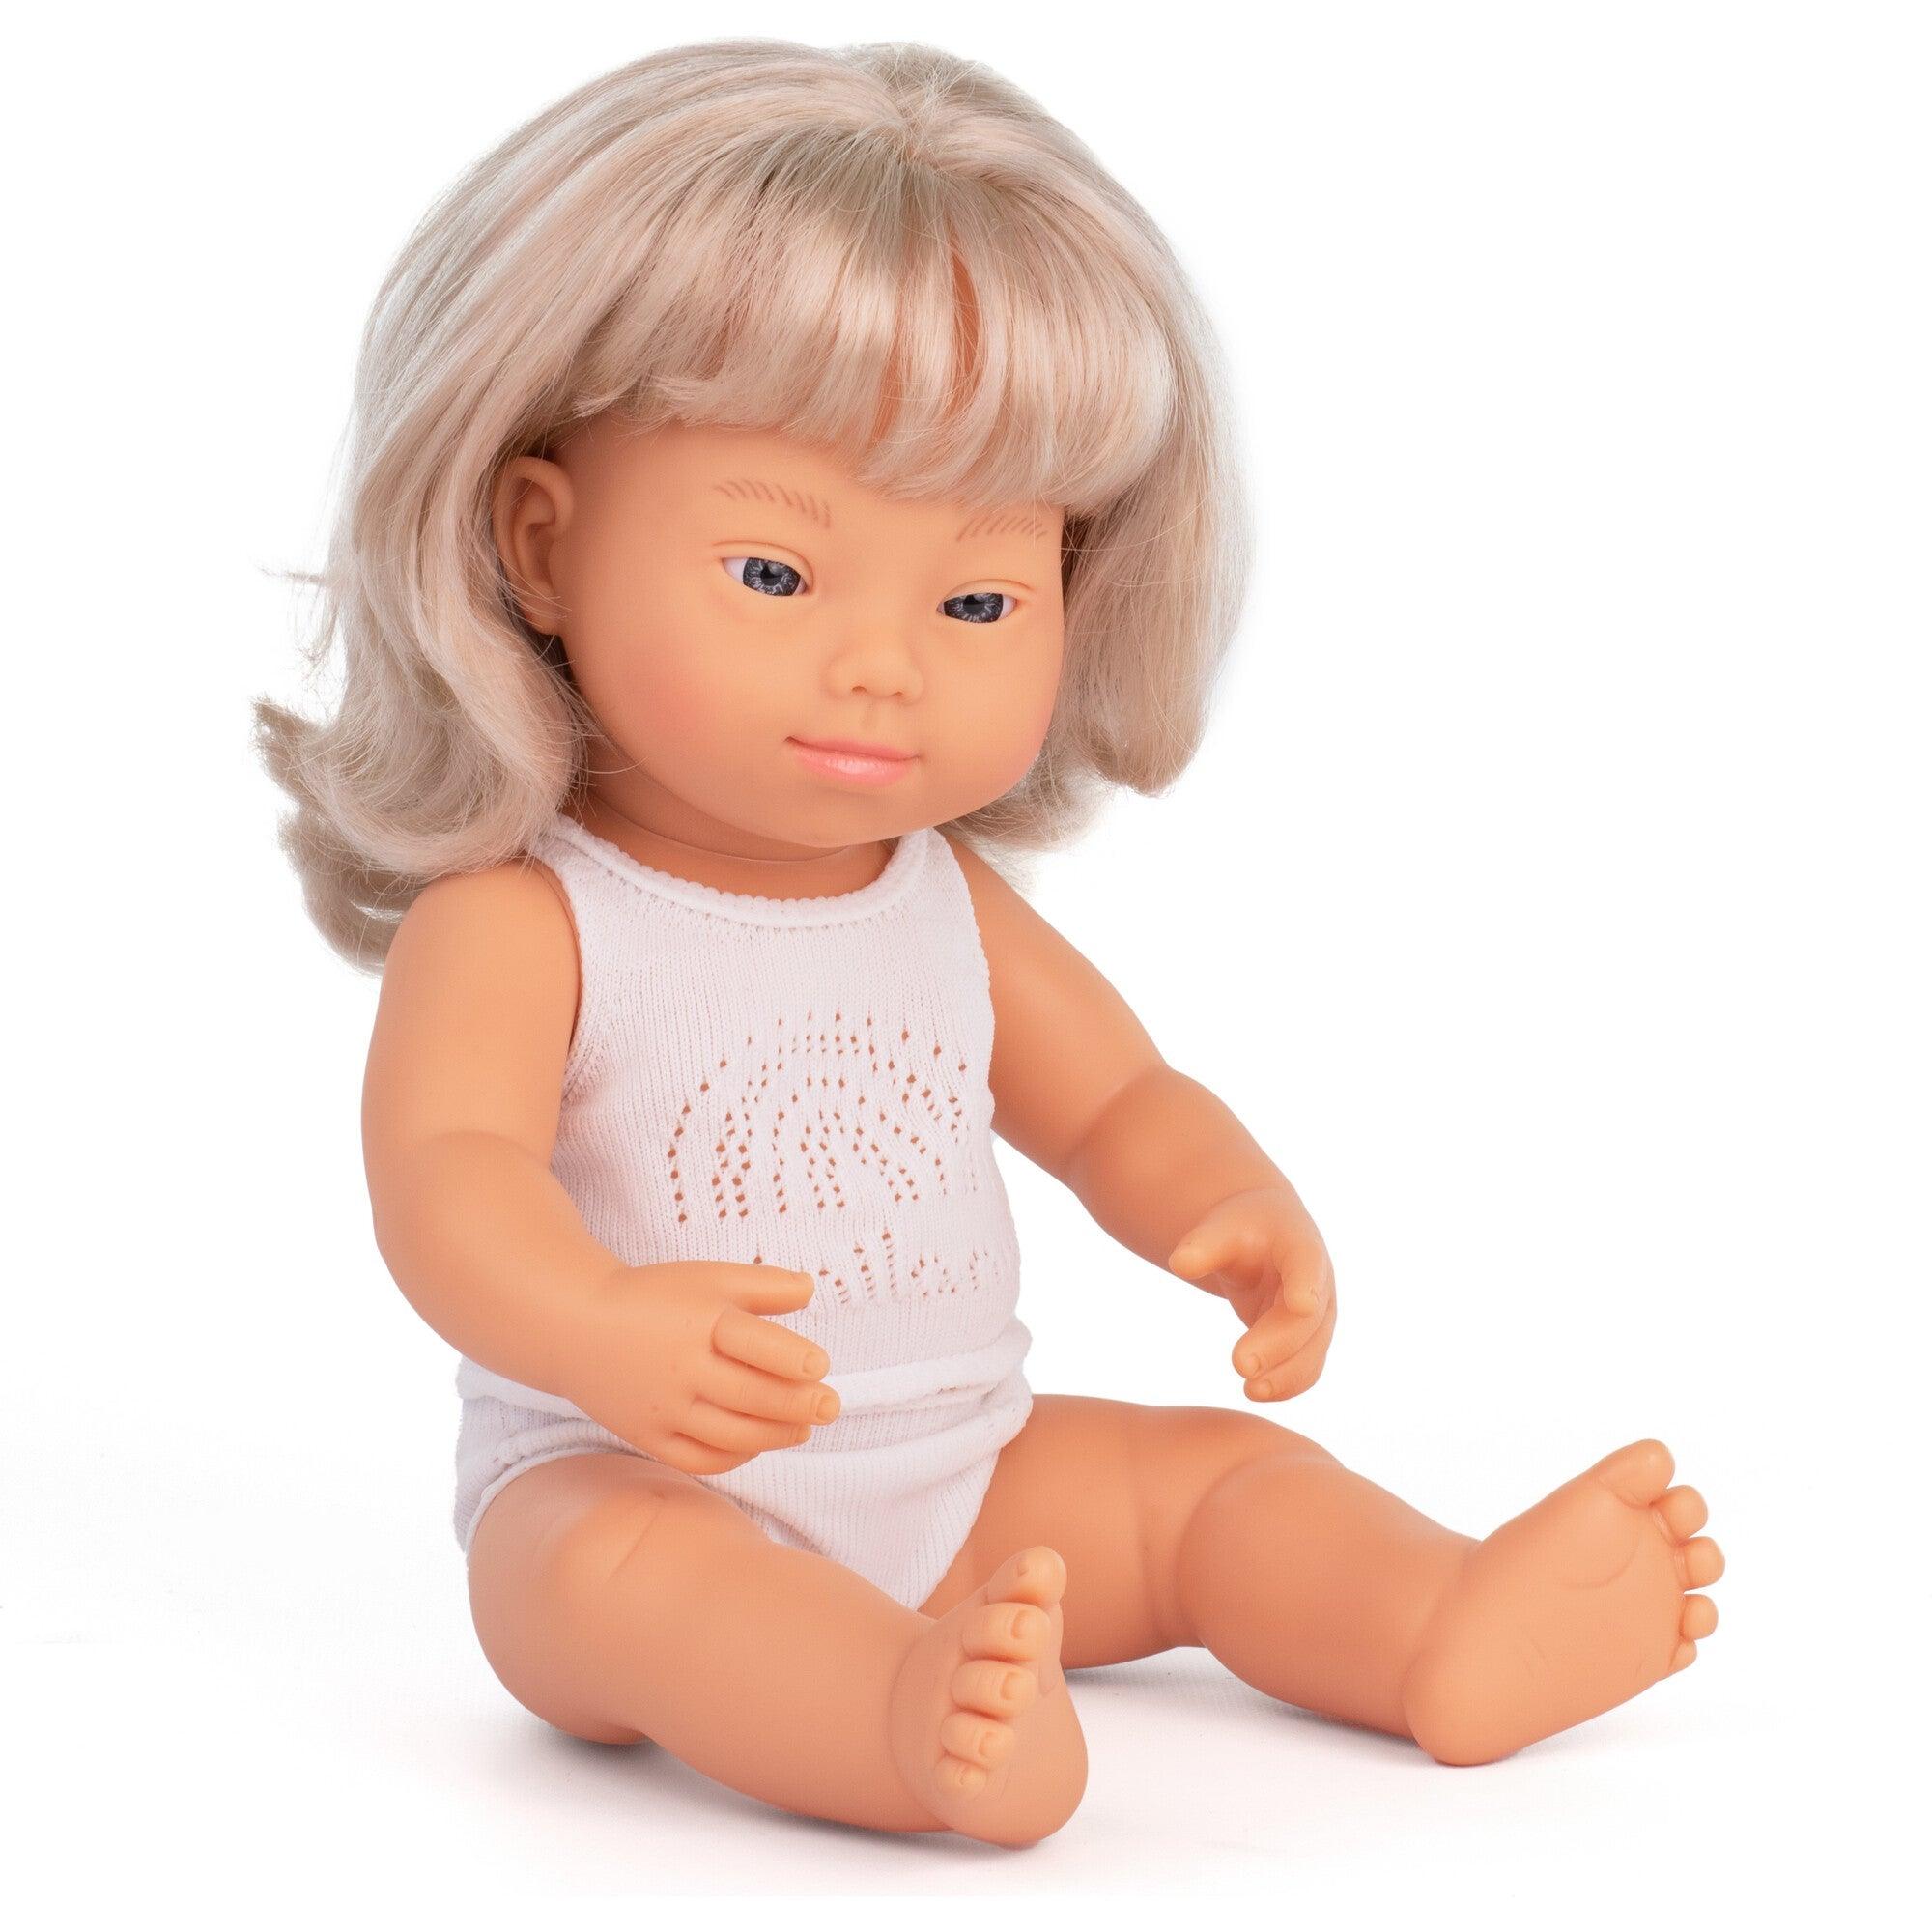 Minilândia: Síndrome de Down Girl Doll Blonde europeu 38 cm